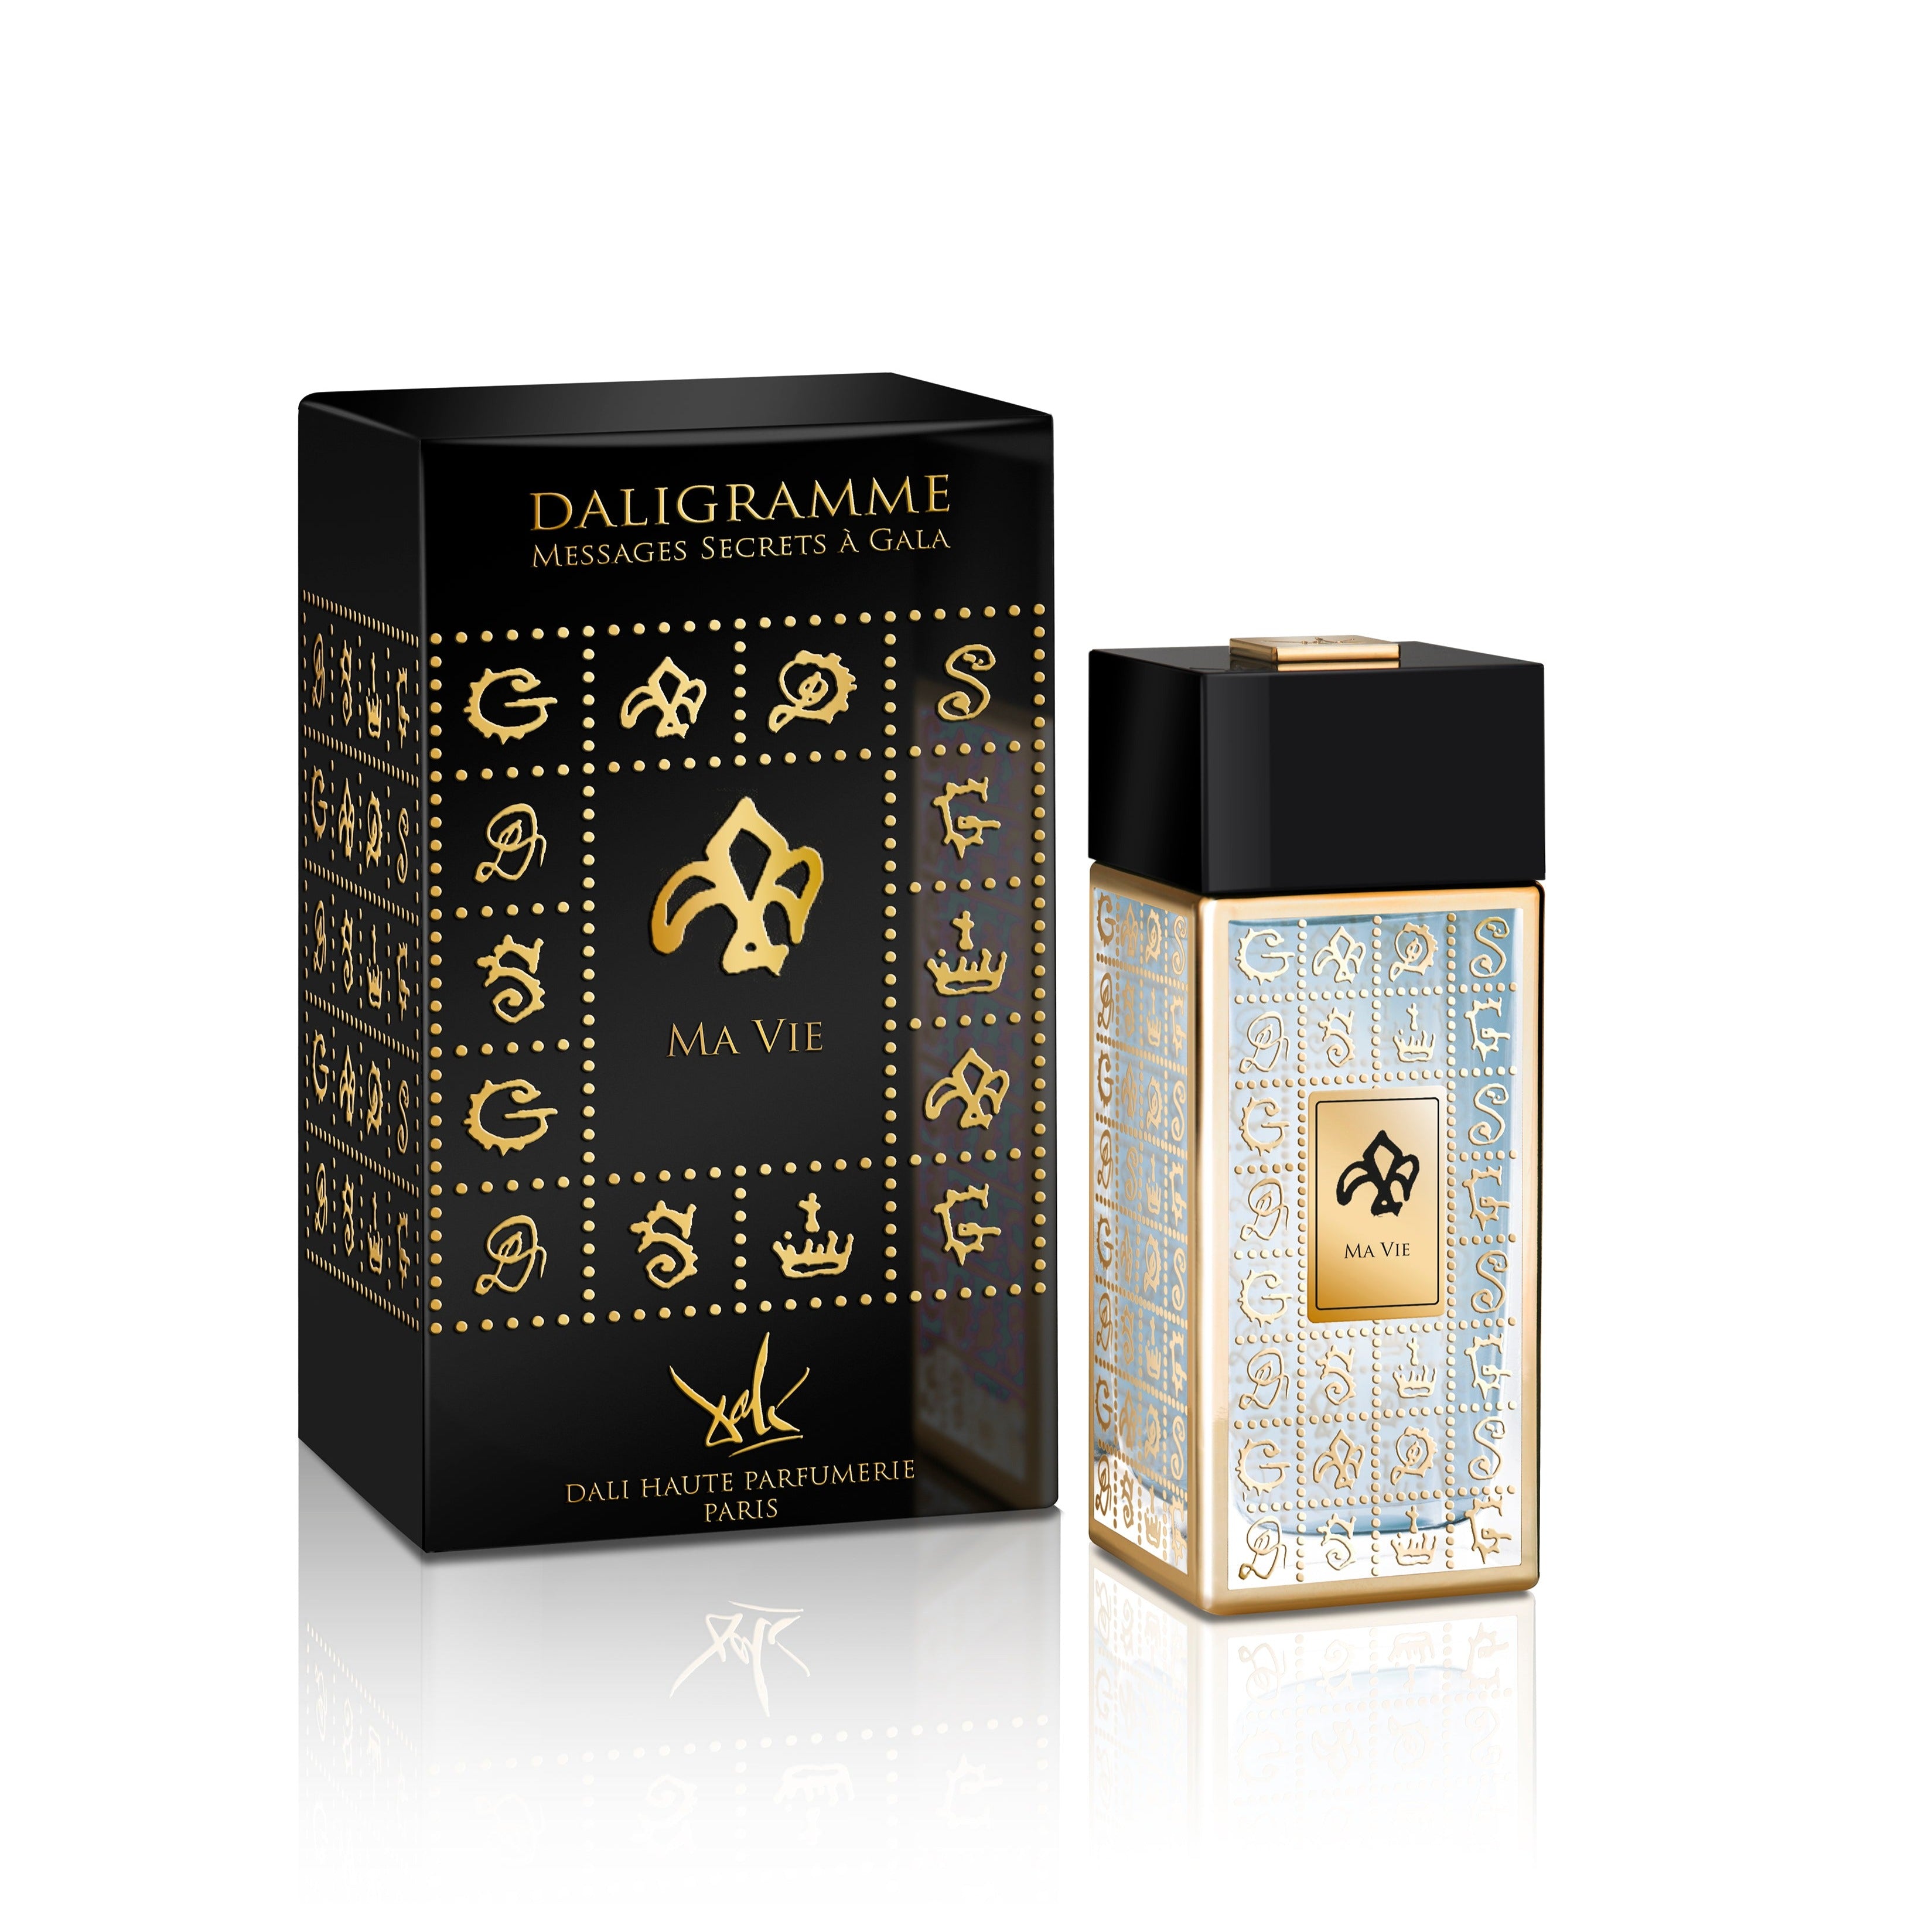 Ma Vie Eau de Parfum 100ml Bottle and Box by Dalí Haute Parfumerie